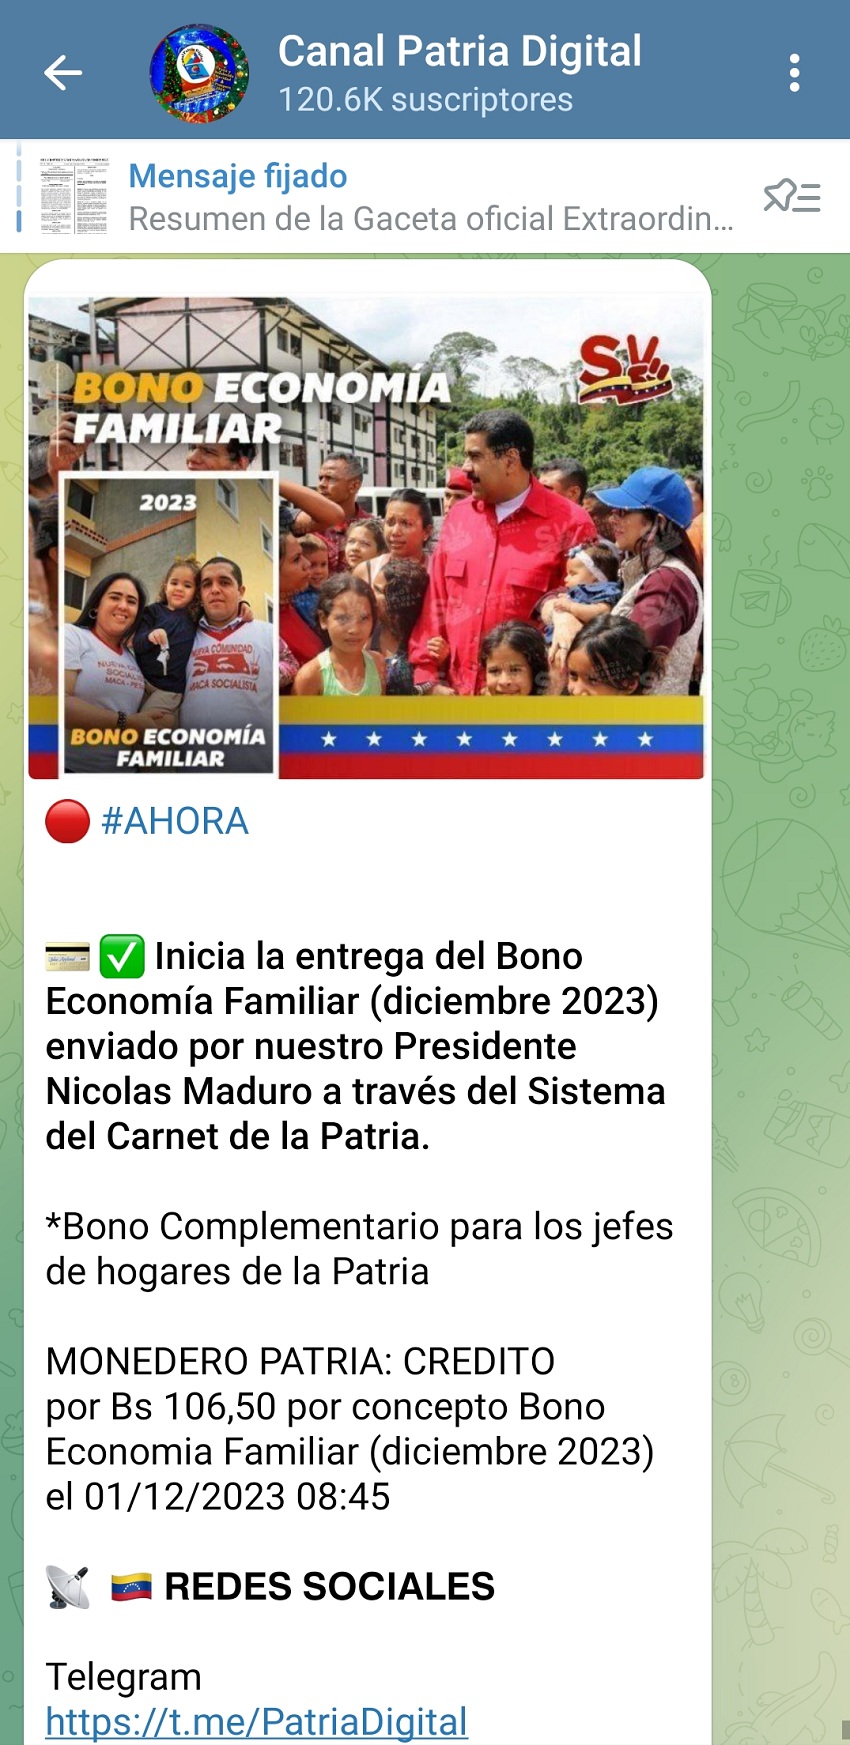 Pagan bono "Economía Familiar" de diciembre a jefes de hogares de la patria por US$ 3